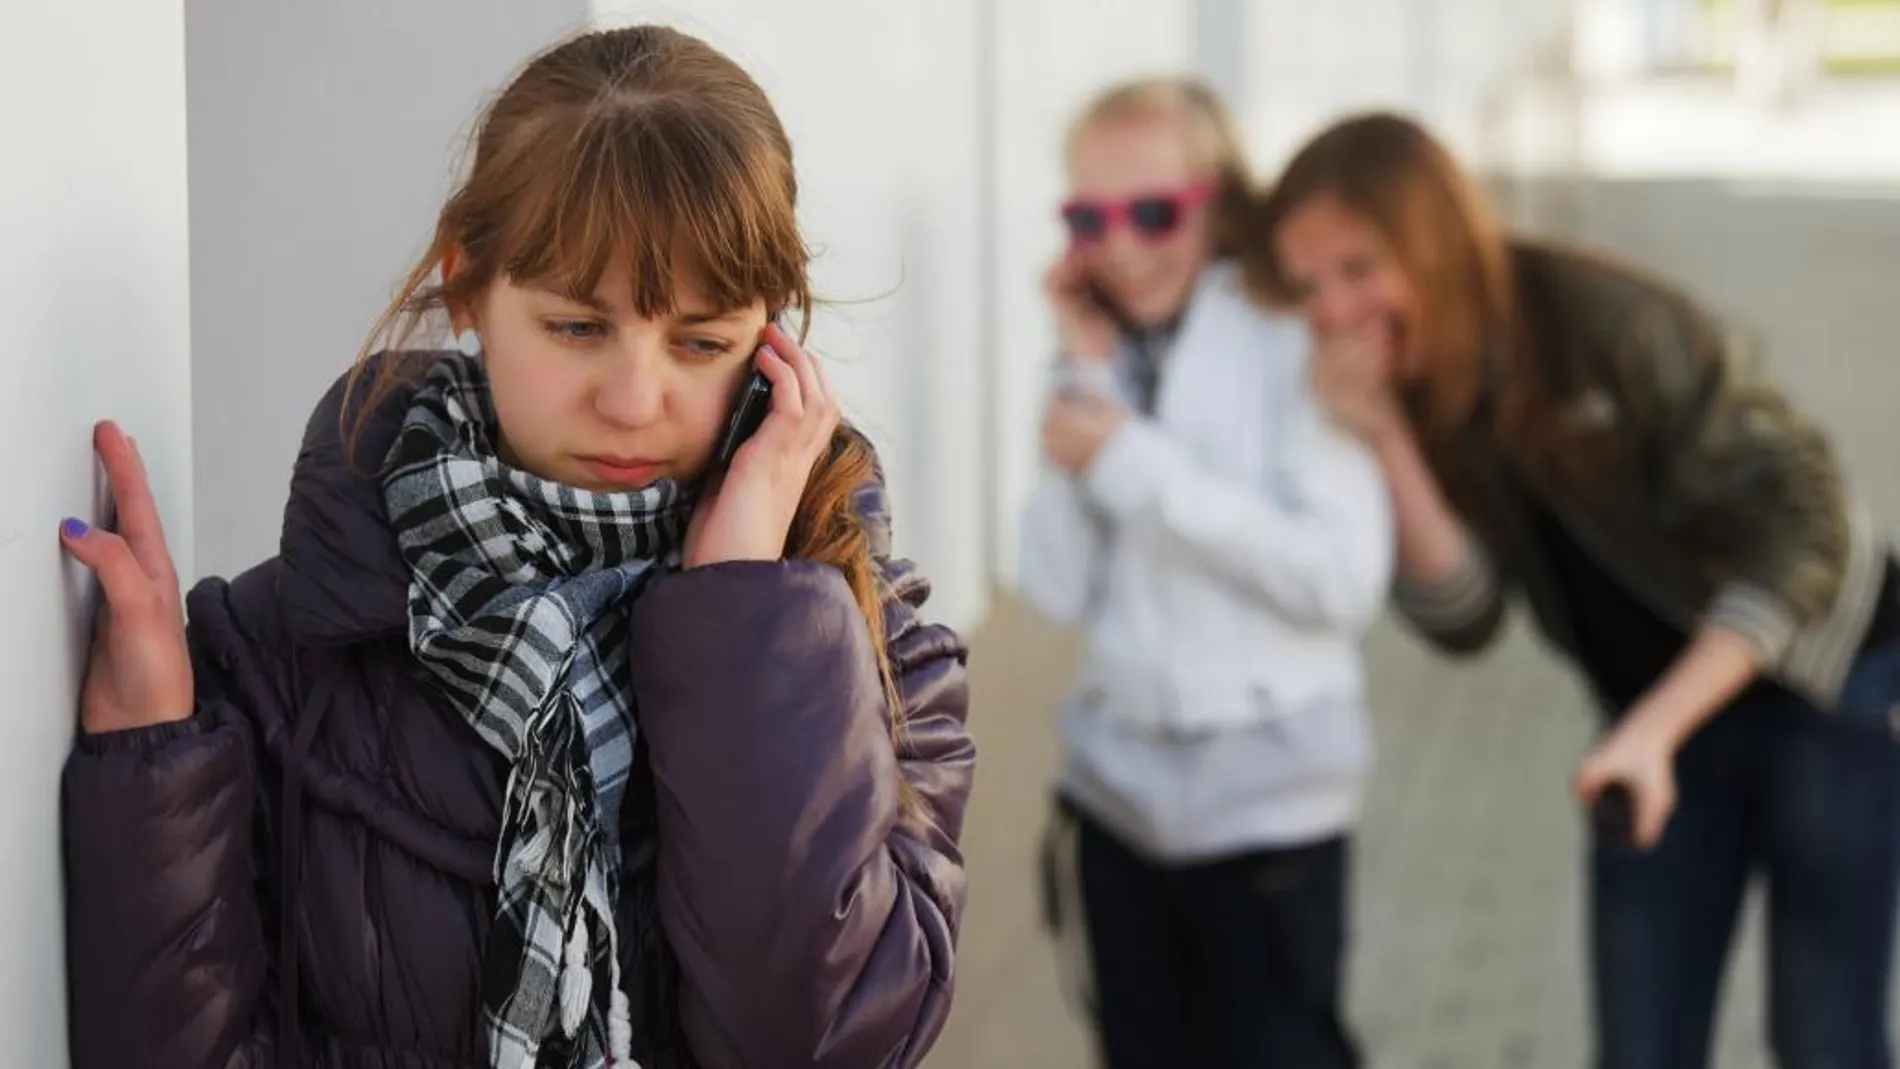 El "ciberbullying" es uno de los grandes peligros a los que pueden estar expuestos los adolescentes en Internet | Fotografía de archivo